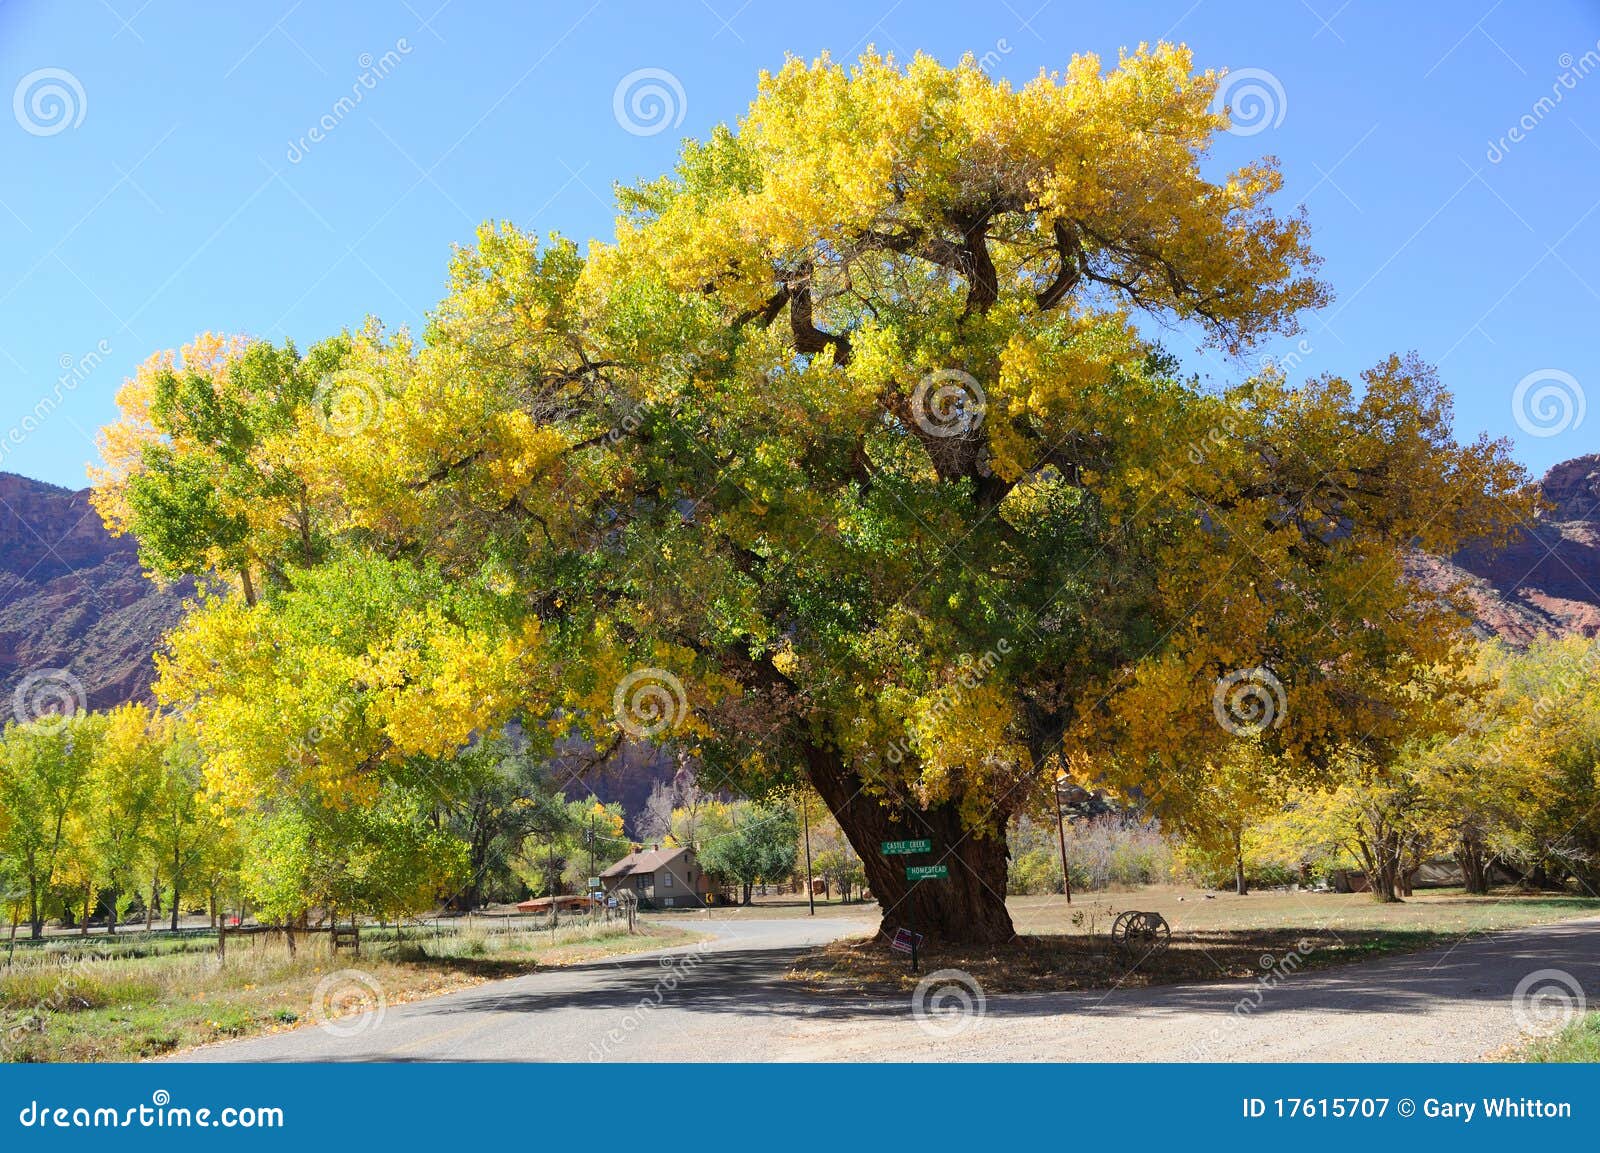 beautiful cottonwood tree in autumn